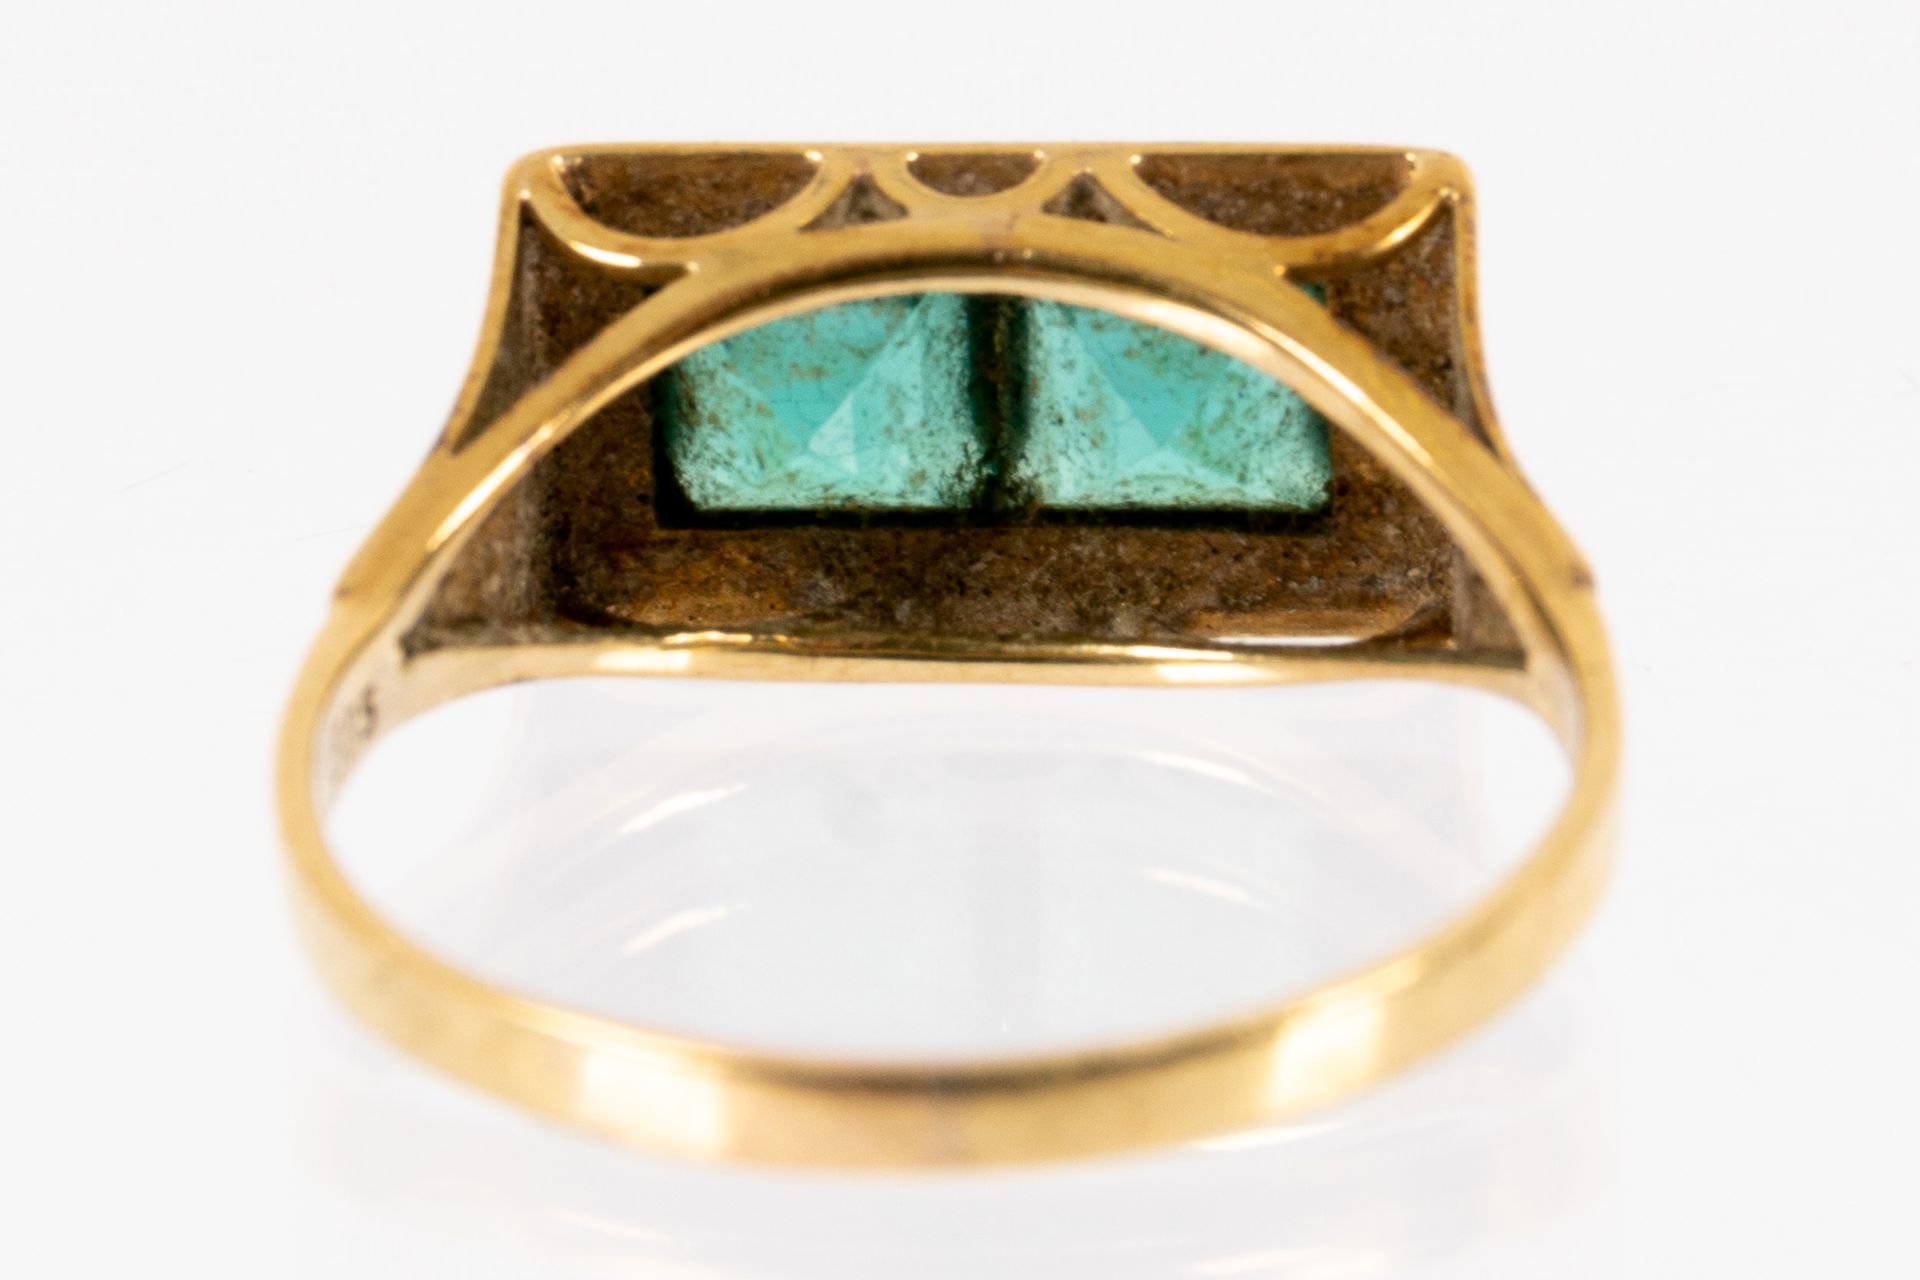 585er Gelbgold-Unisex-Ring mit grünem Farbsteinbesatz, ca. 2,5 gr. brutto, Ringinnendurchmesser ca. - Bild 4 aus 5